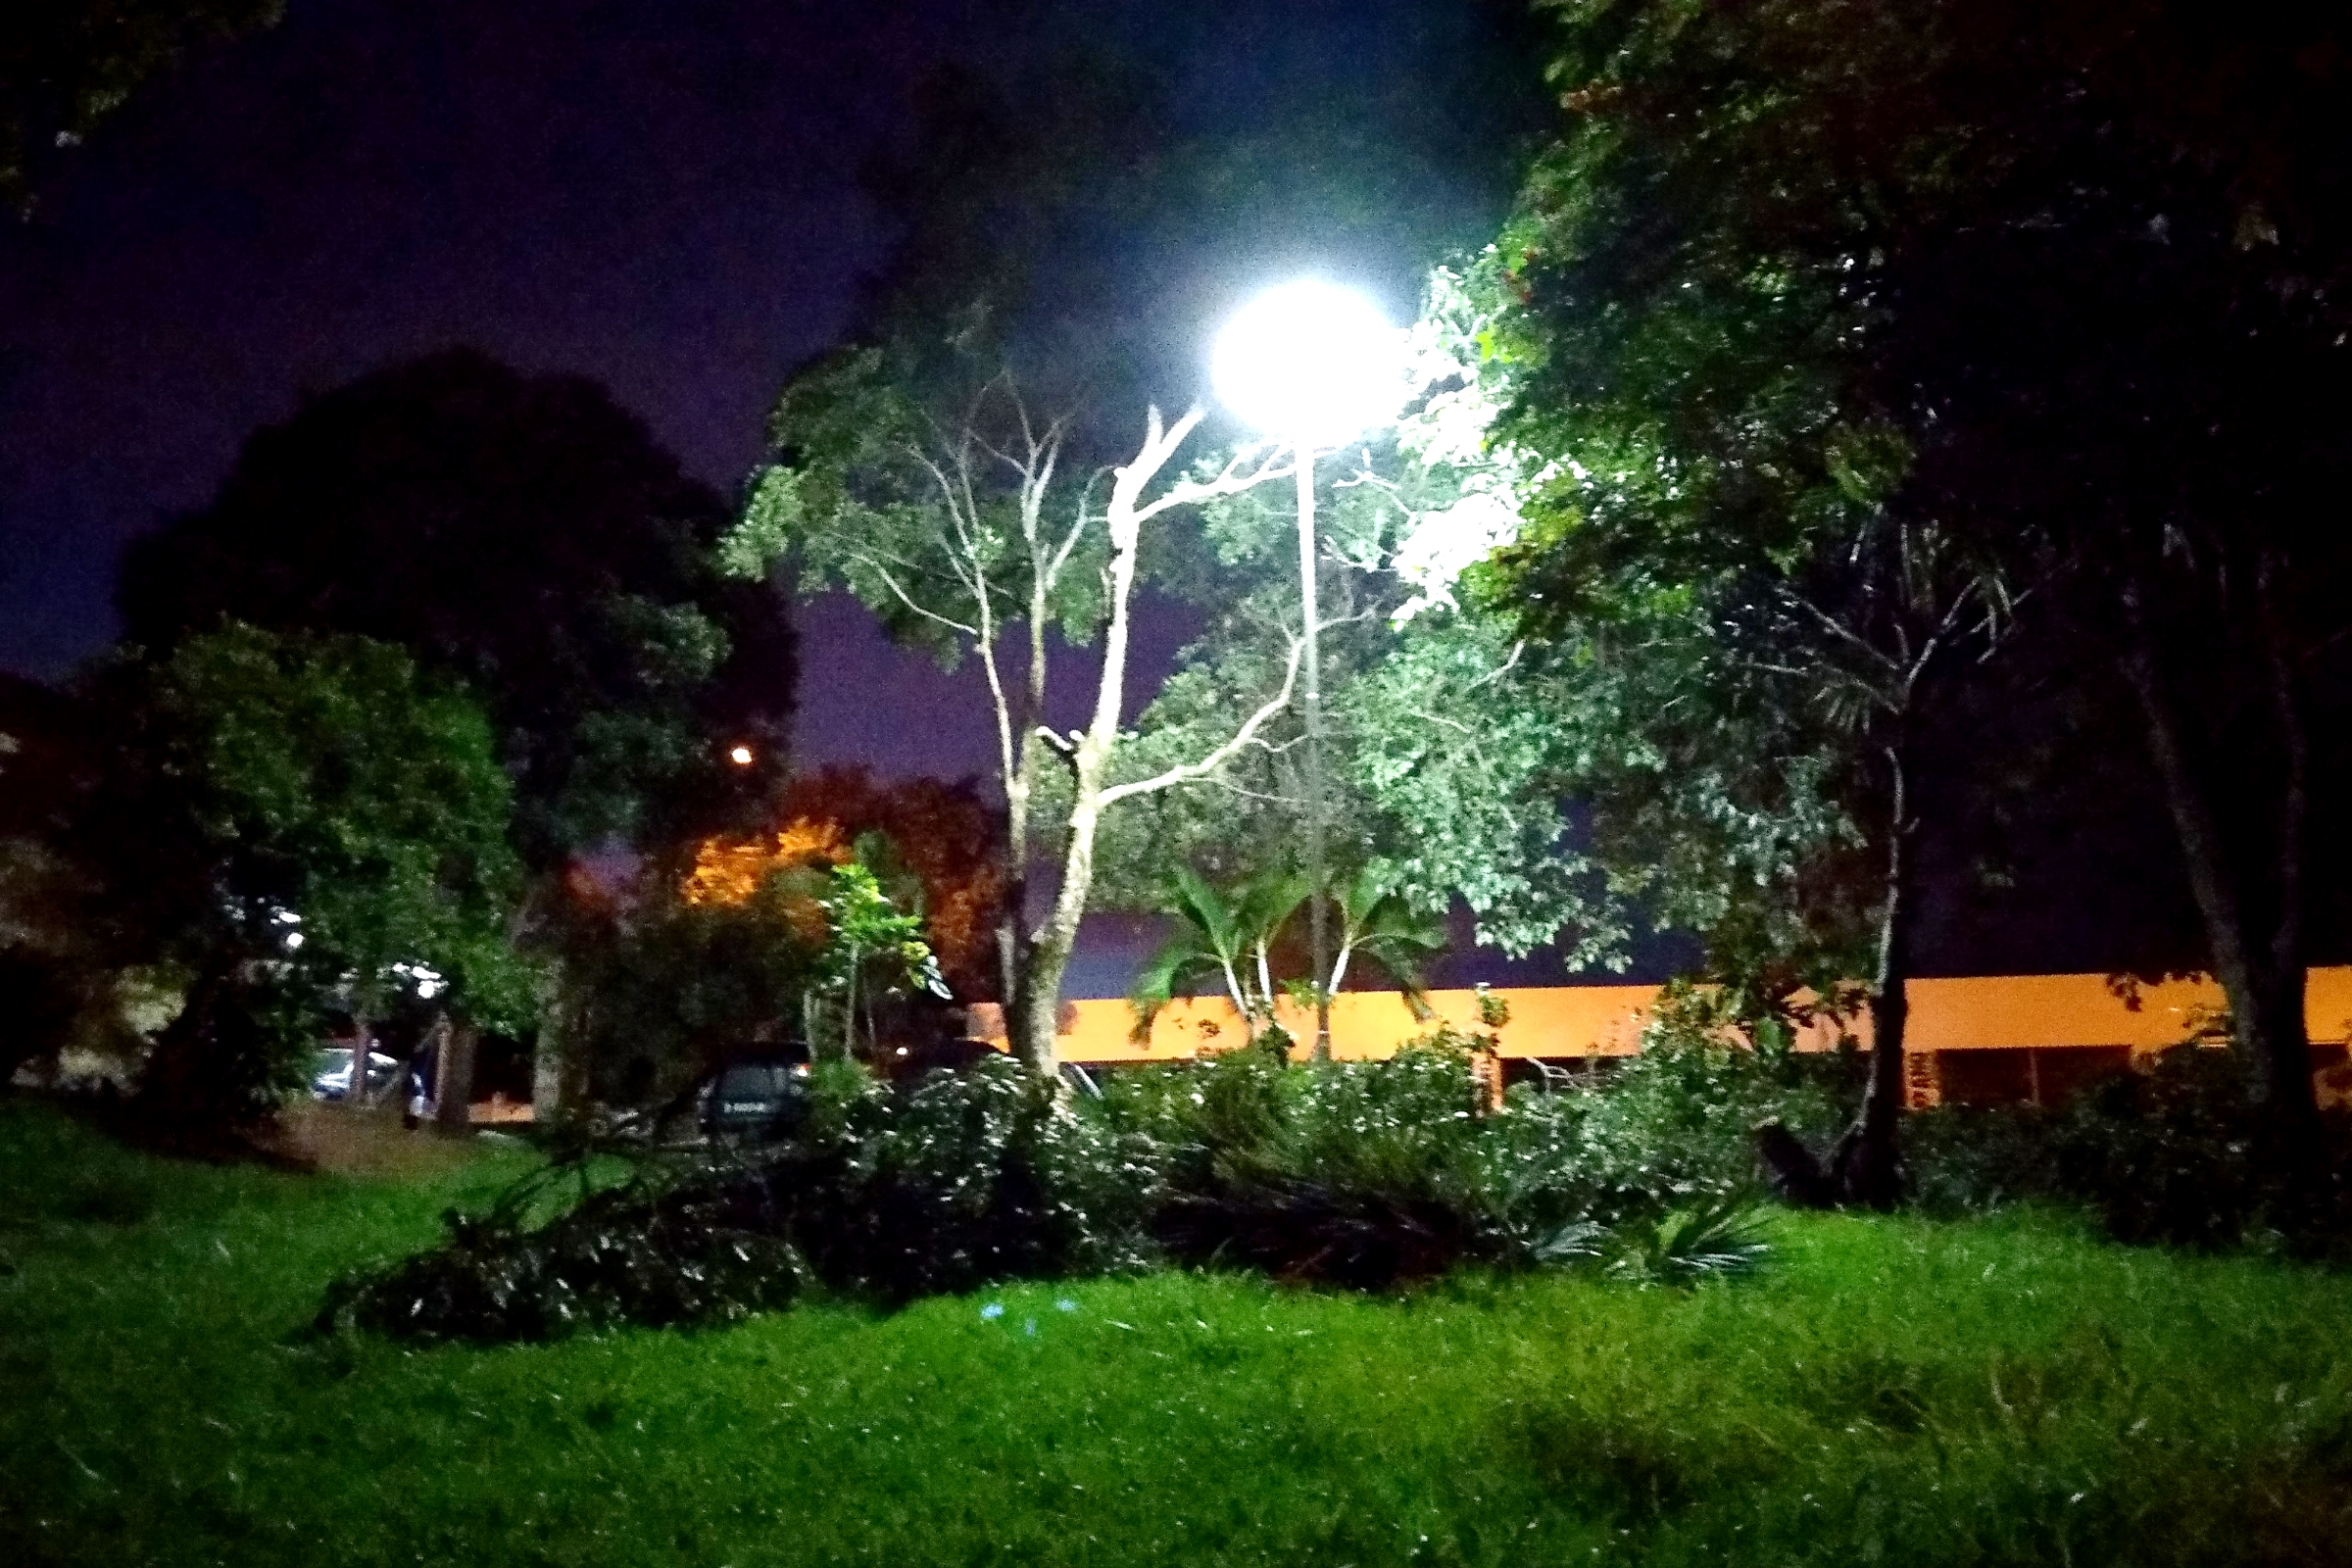 Próximo ao Terminal Rodoviário, uma das árvores obstruía a luz do poste e foi podada.